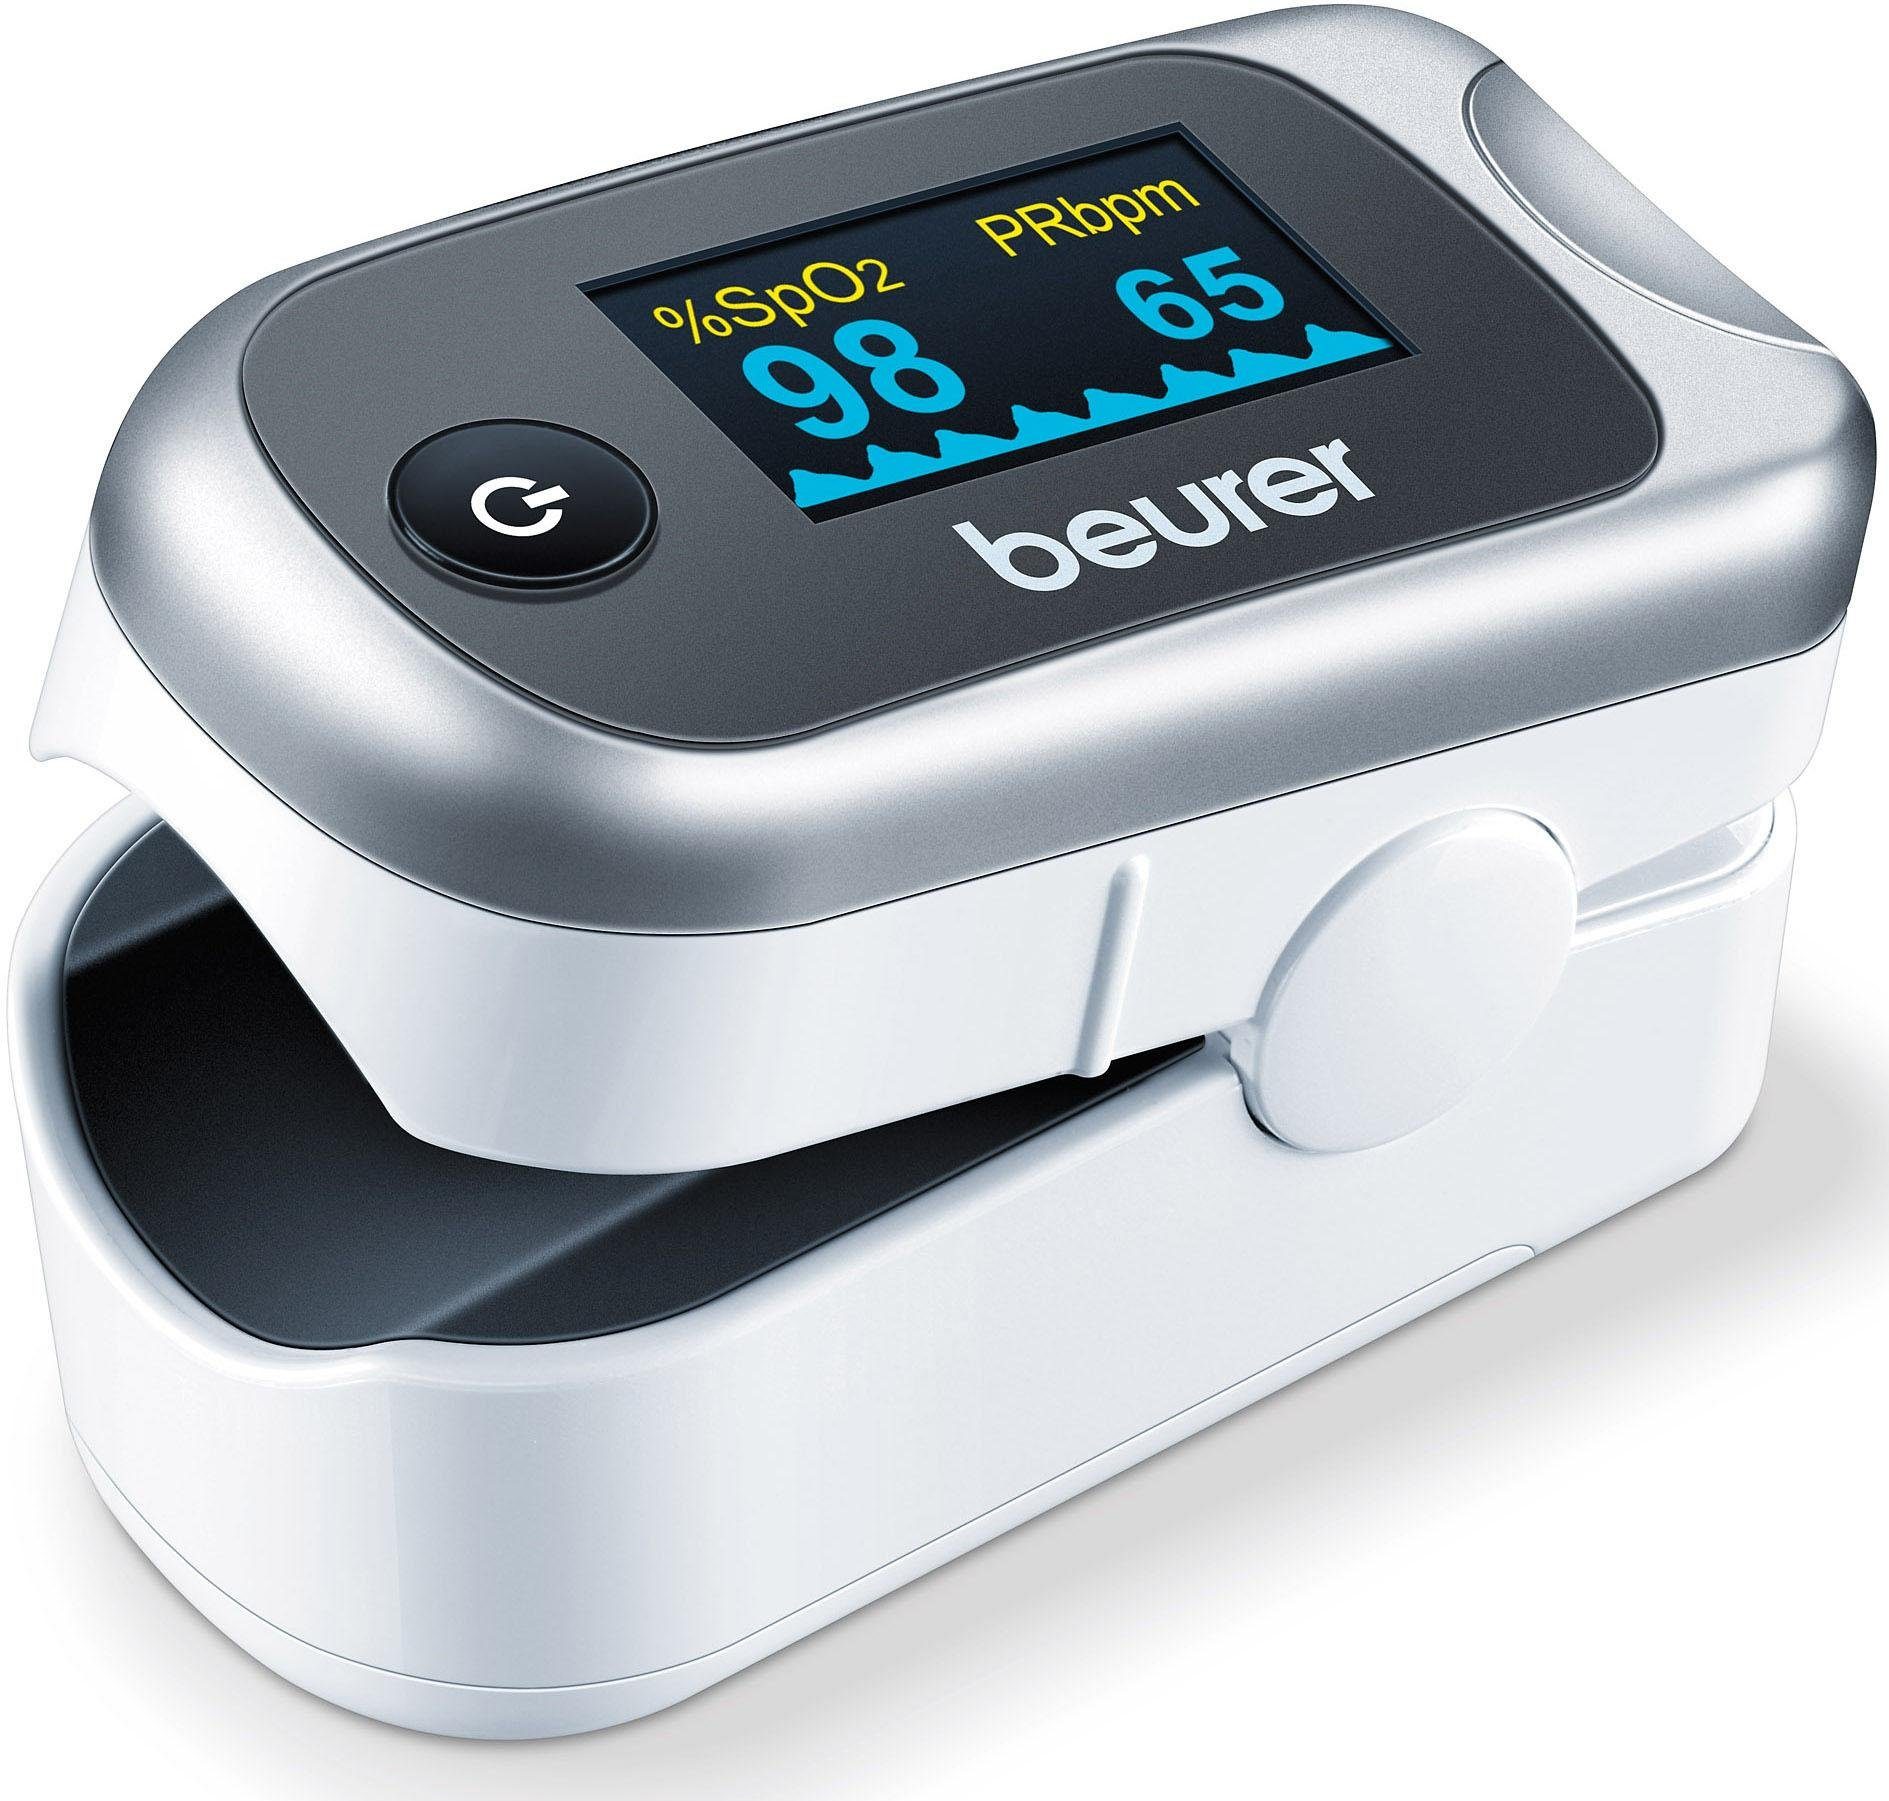 Beurer Pulsoximeter PO 40 online kaufen | OTTO